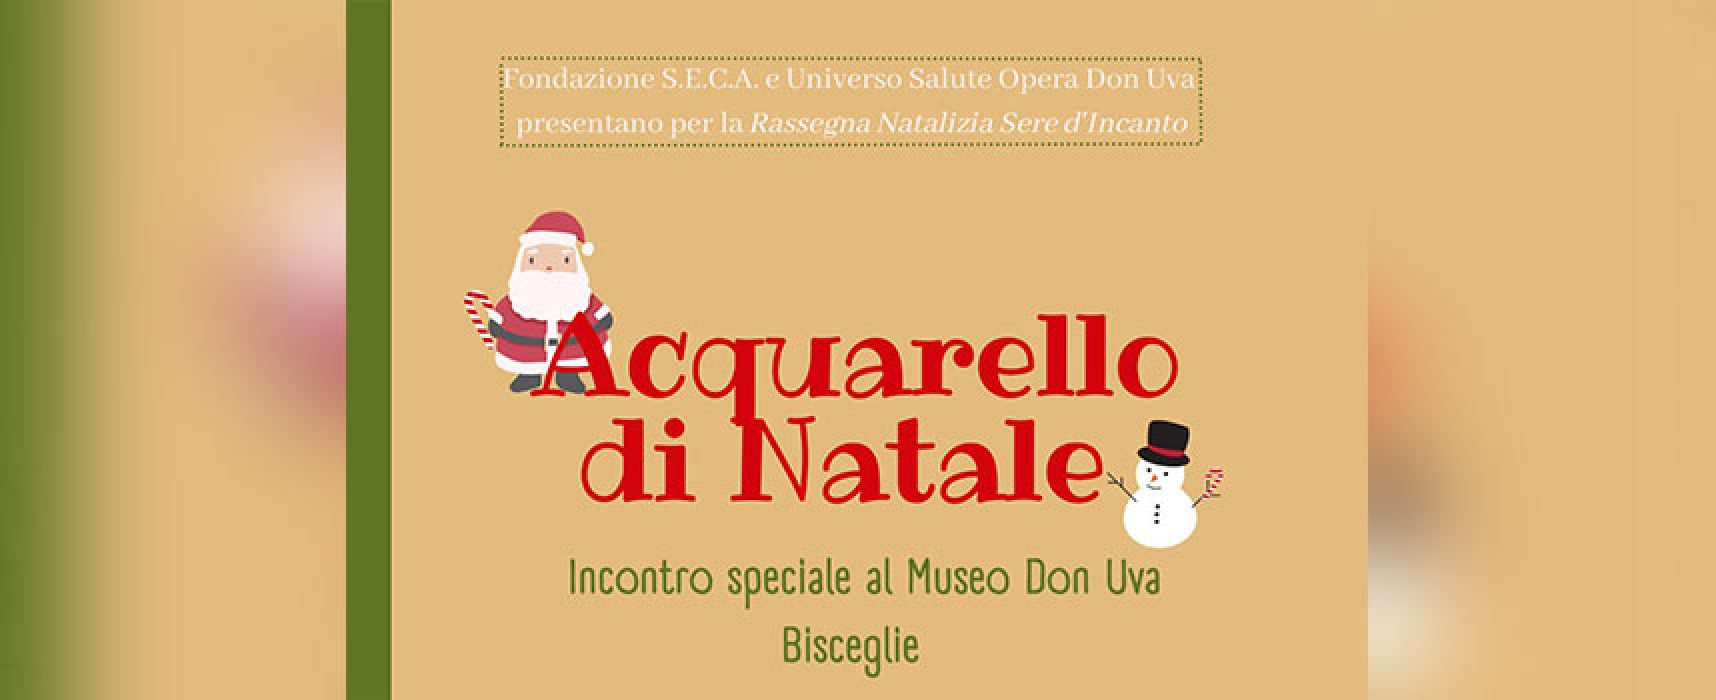 Il progetto Natale d’Arte con Acquerello Natalizio fa tappa a Bisceglie